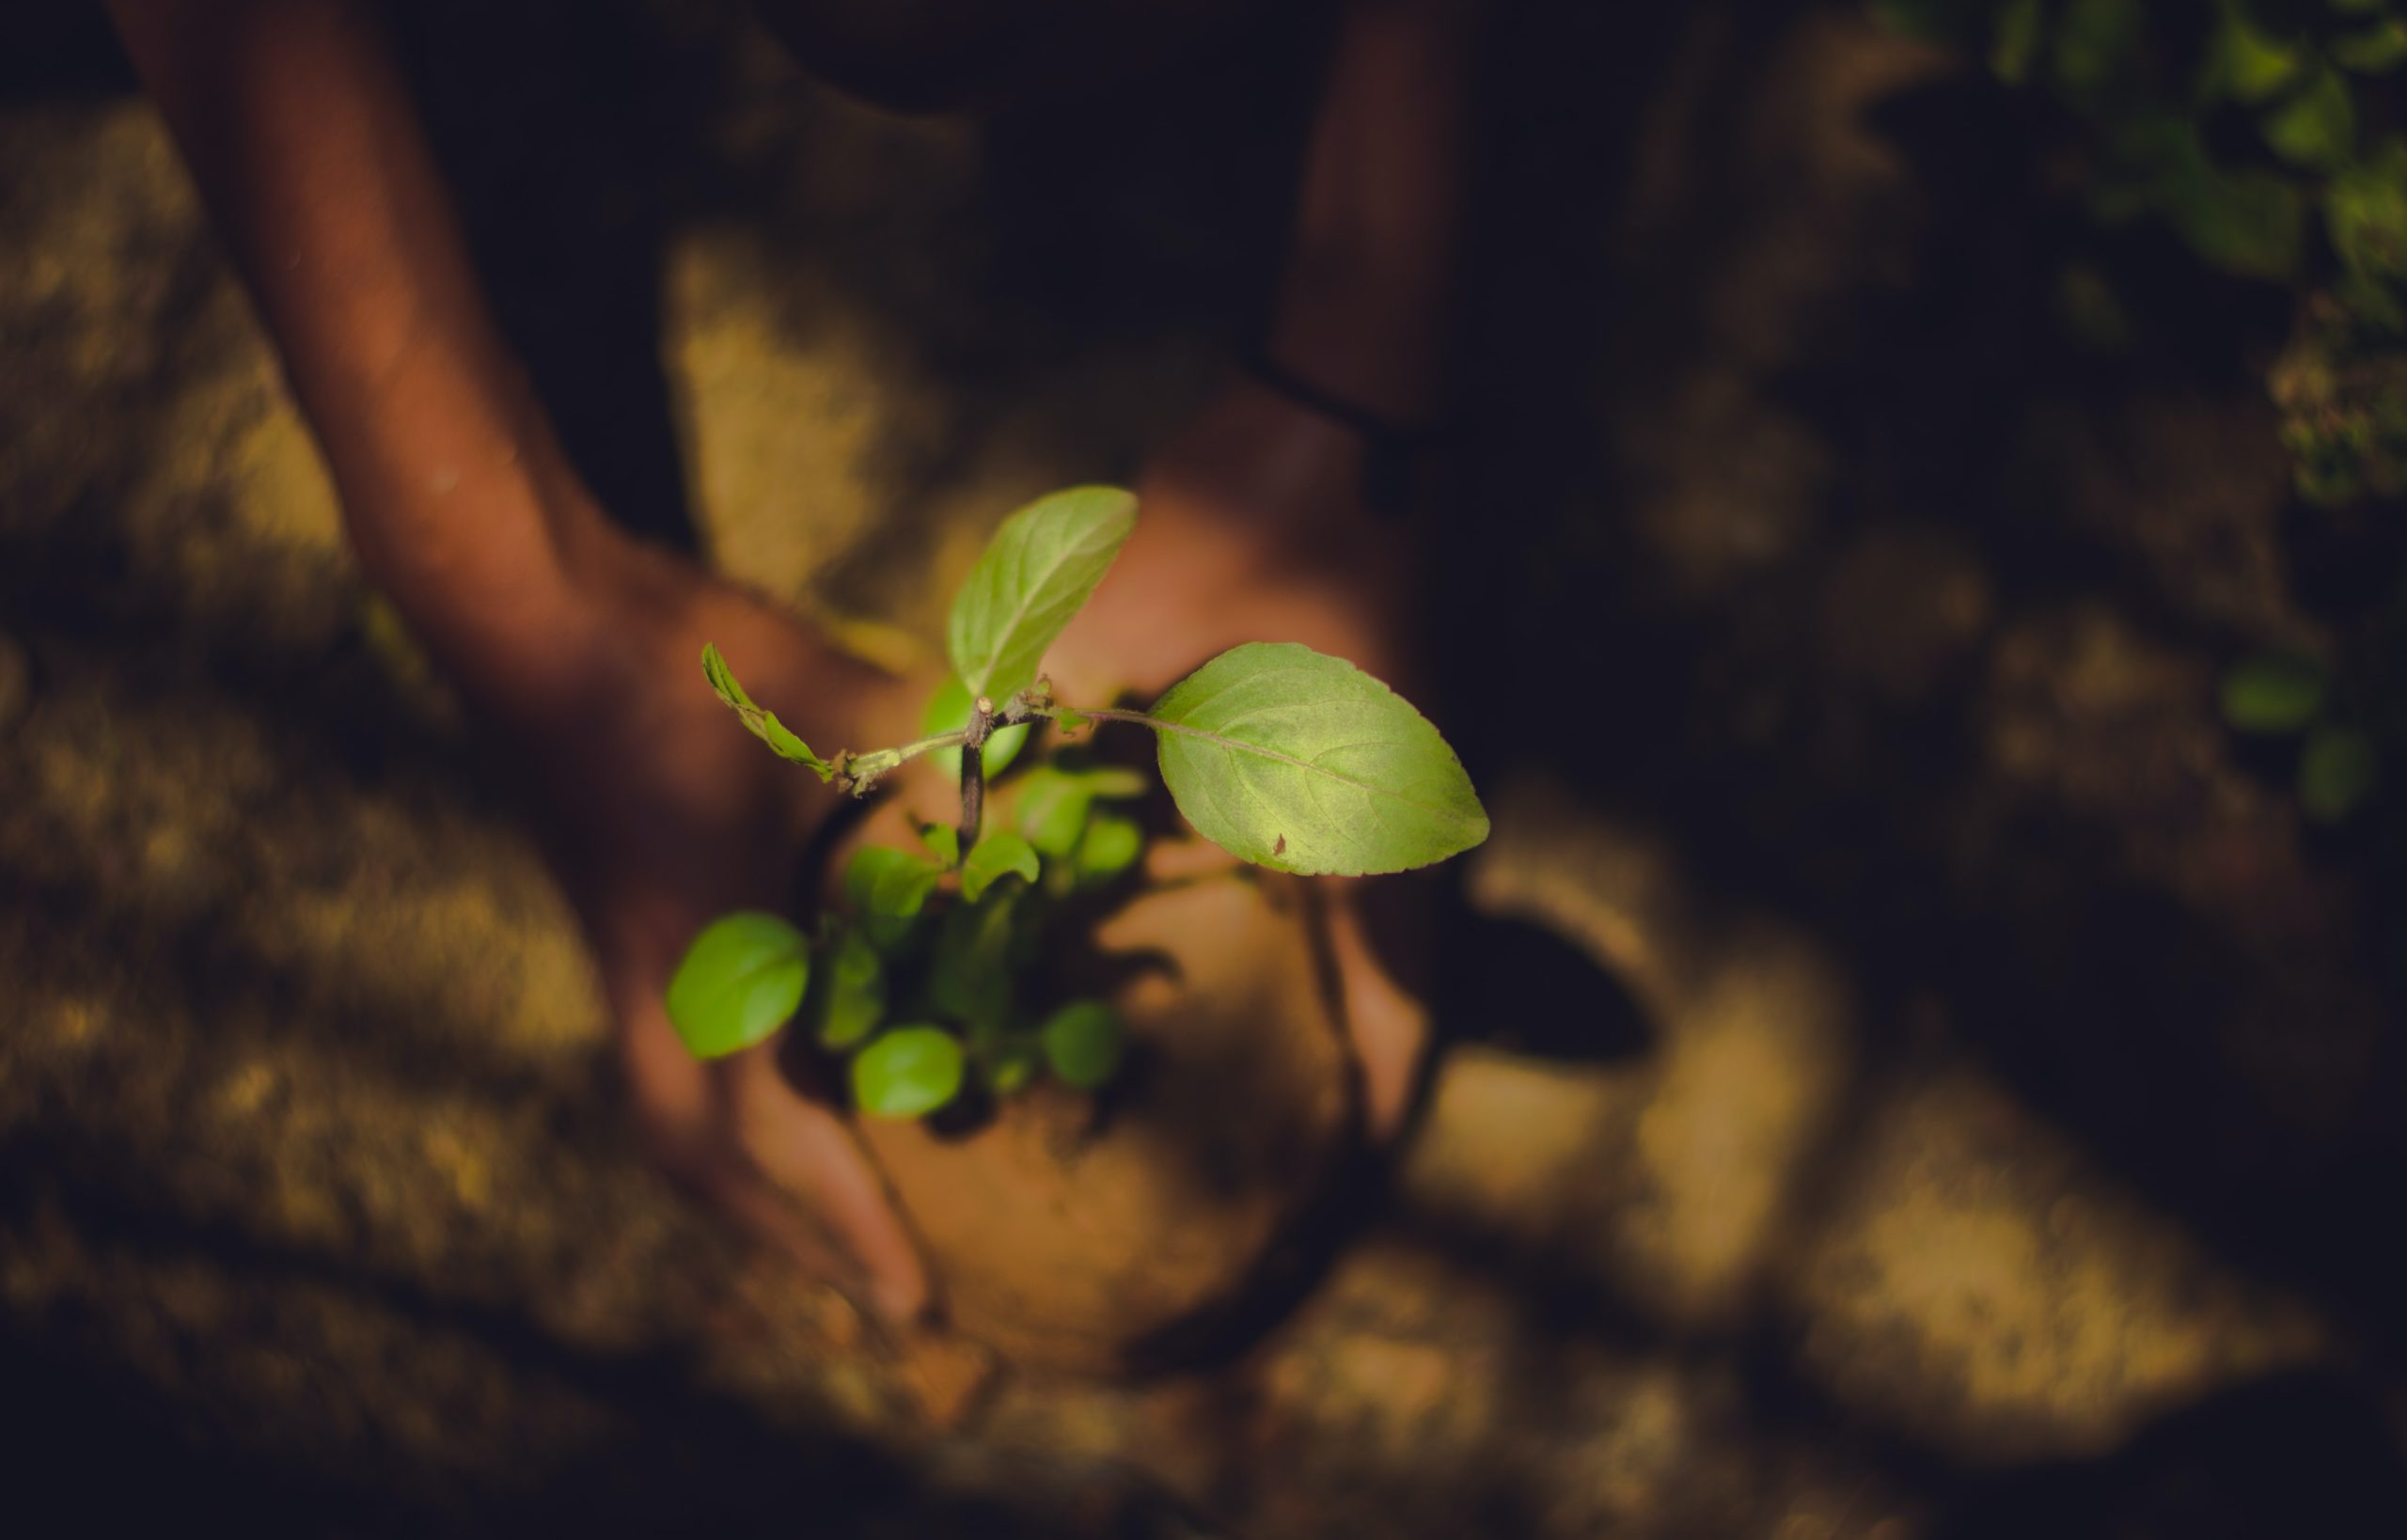 Une personne tient une plante dans la terre, démontrant des pratiques environnementales inspirantes.